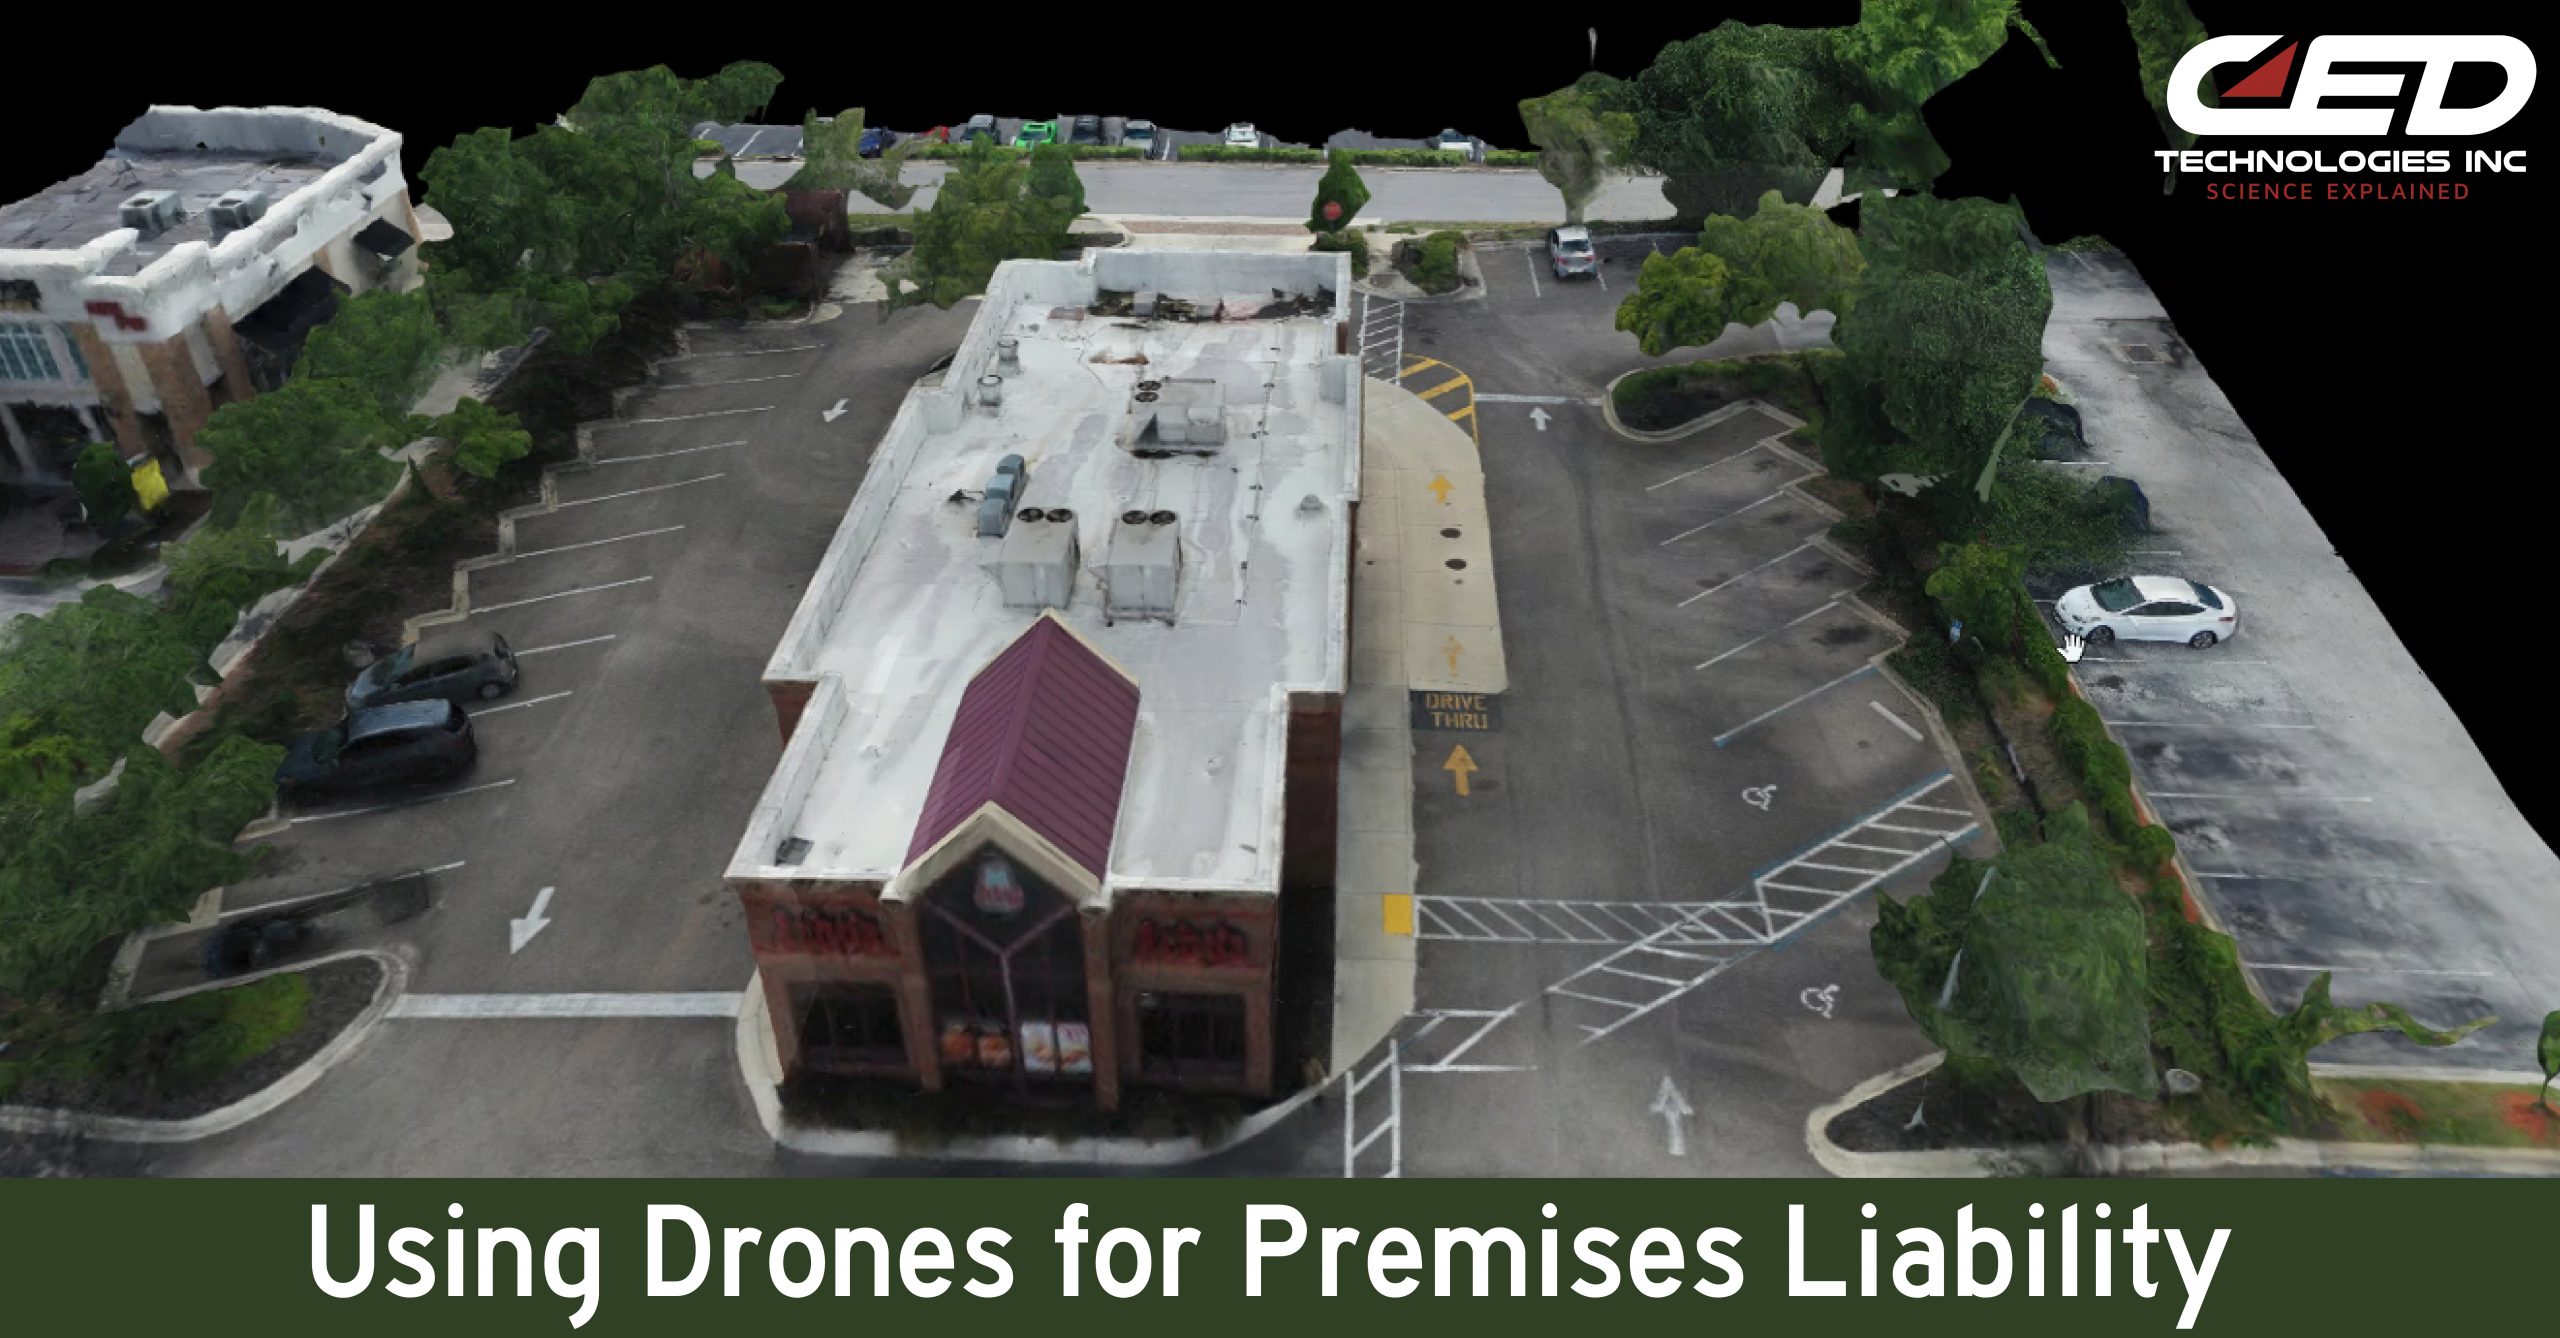 Drones for Premises Liability Cases